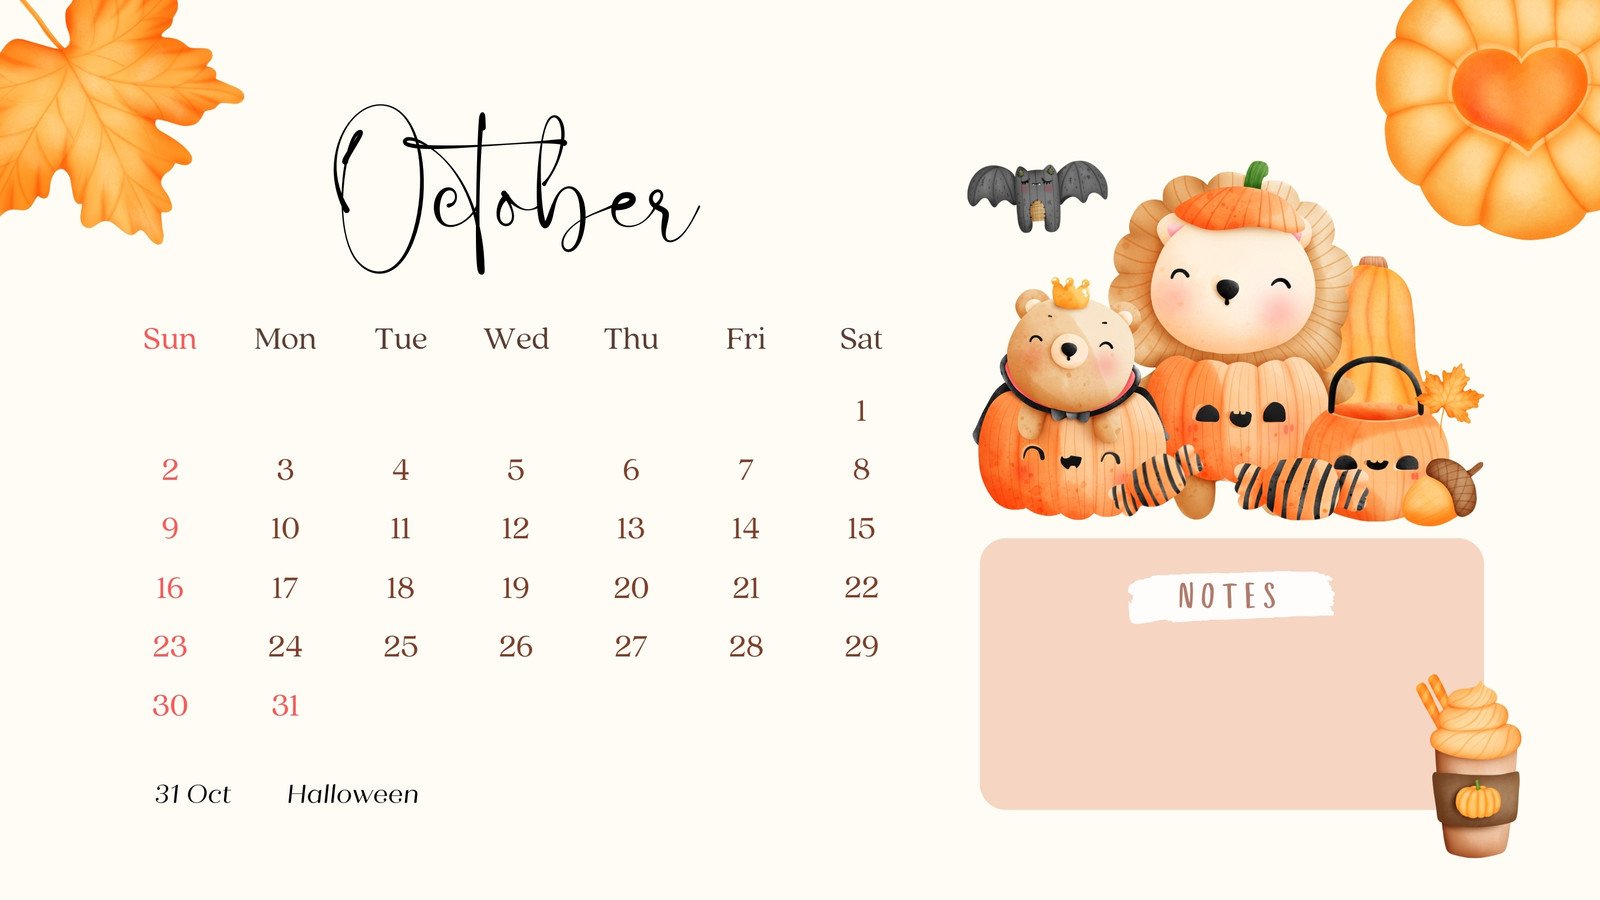 October 2022 Calendar Wallpapers HD Desktop  PixelsTalkNet